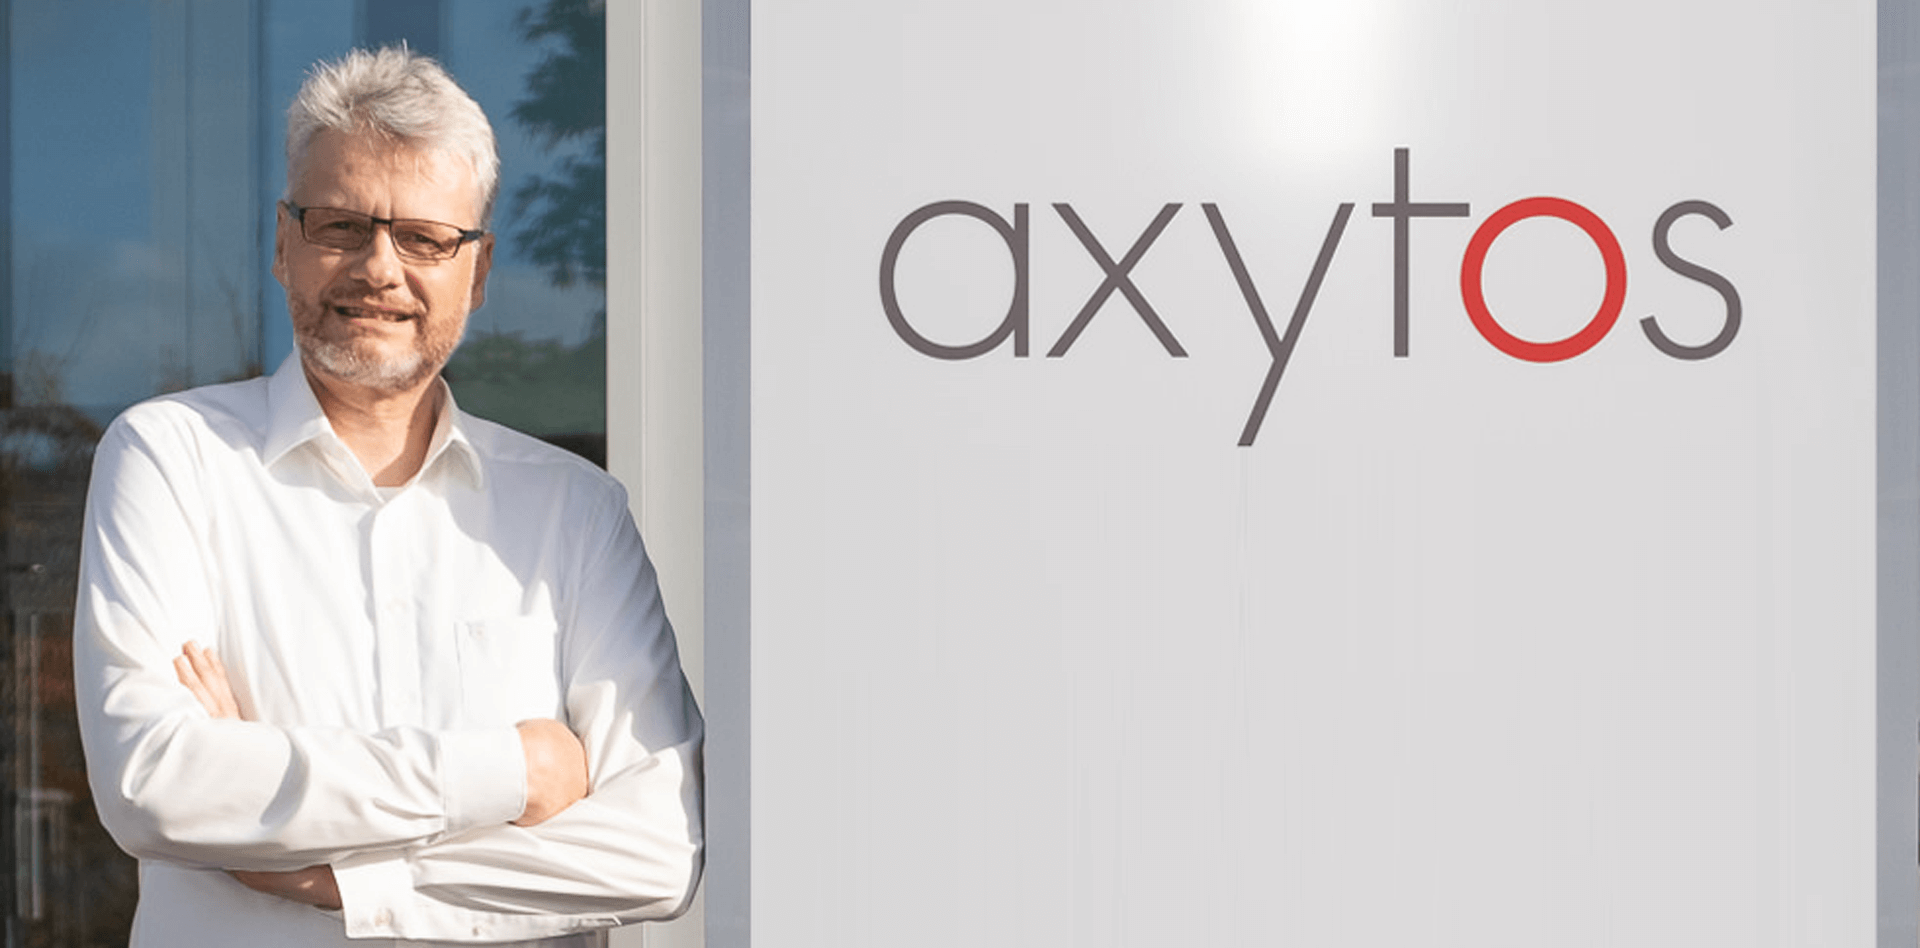 axytos Matthias Schubert KI-Tage